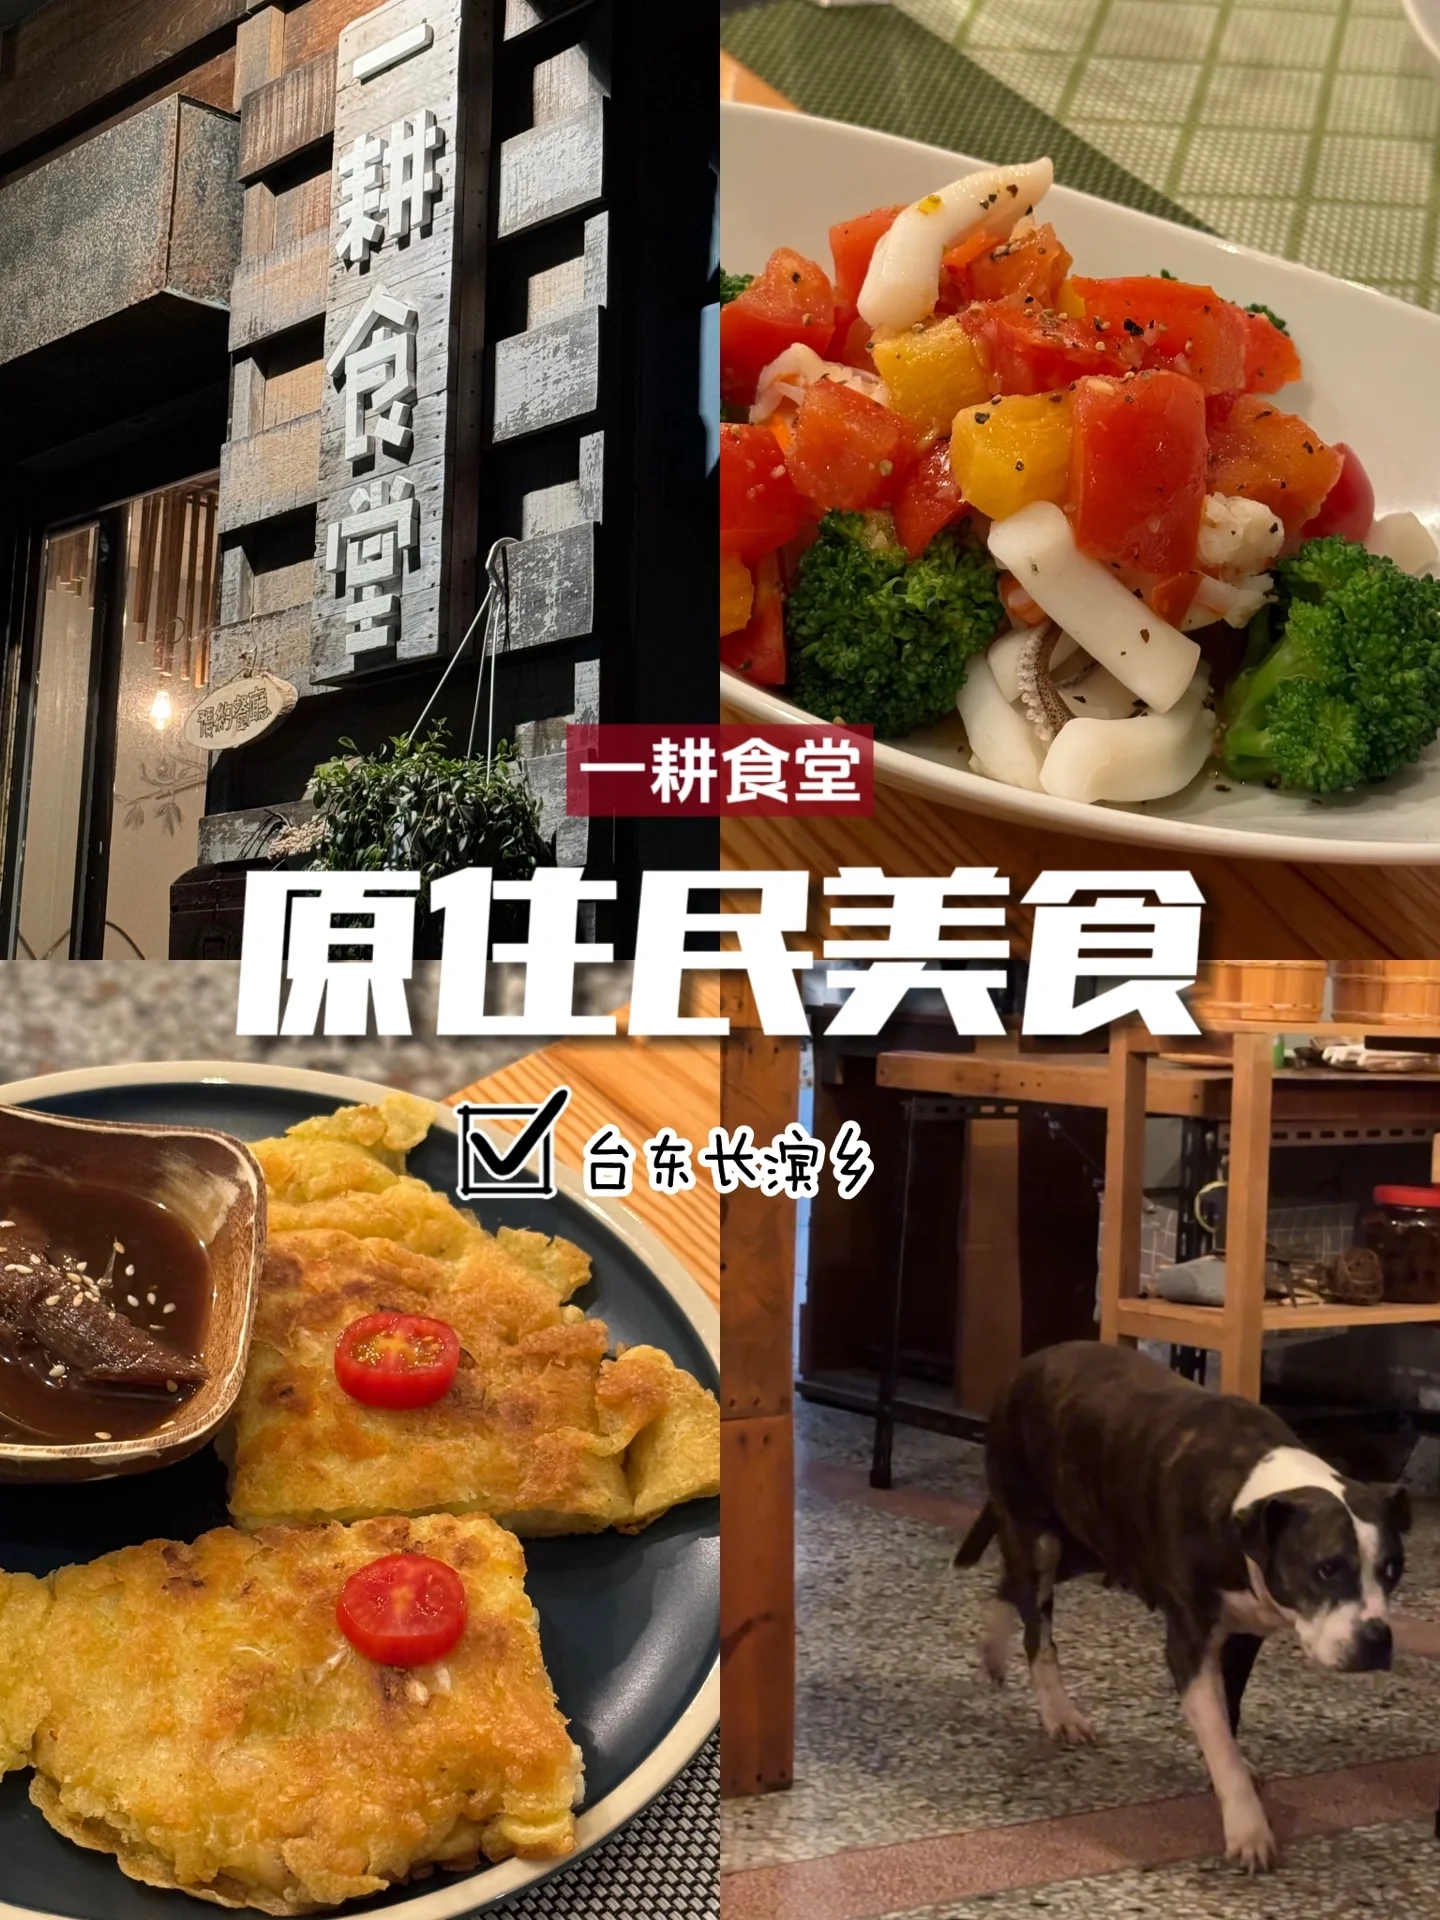 台湾原住民美食一级棒 这家小店位于台东长滨乡,一耕食堂主打一个无菜单原住民料理. 老板娘很贴心,每一